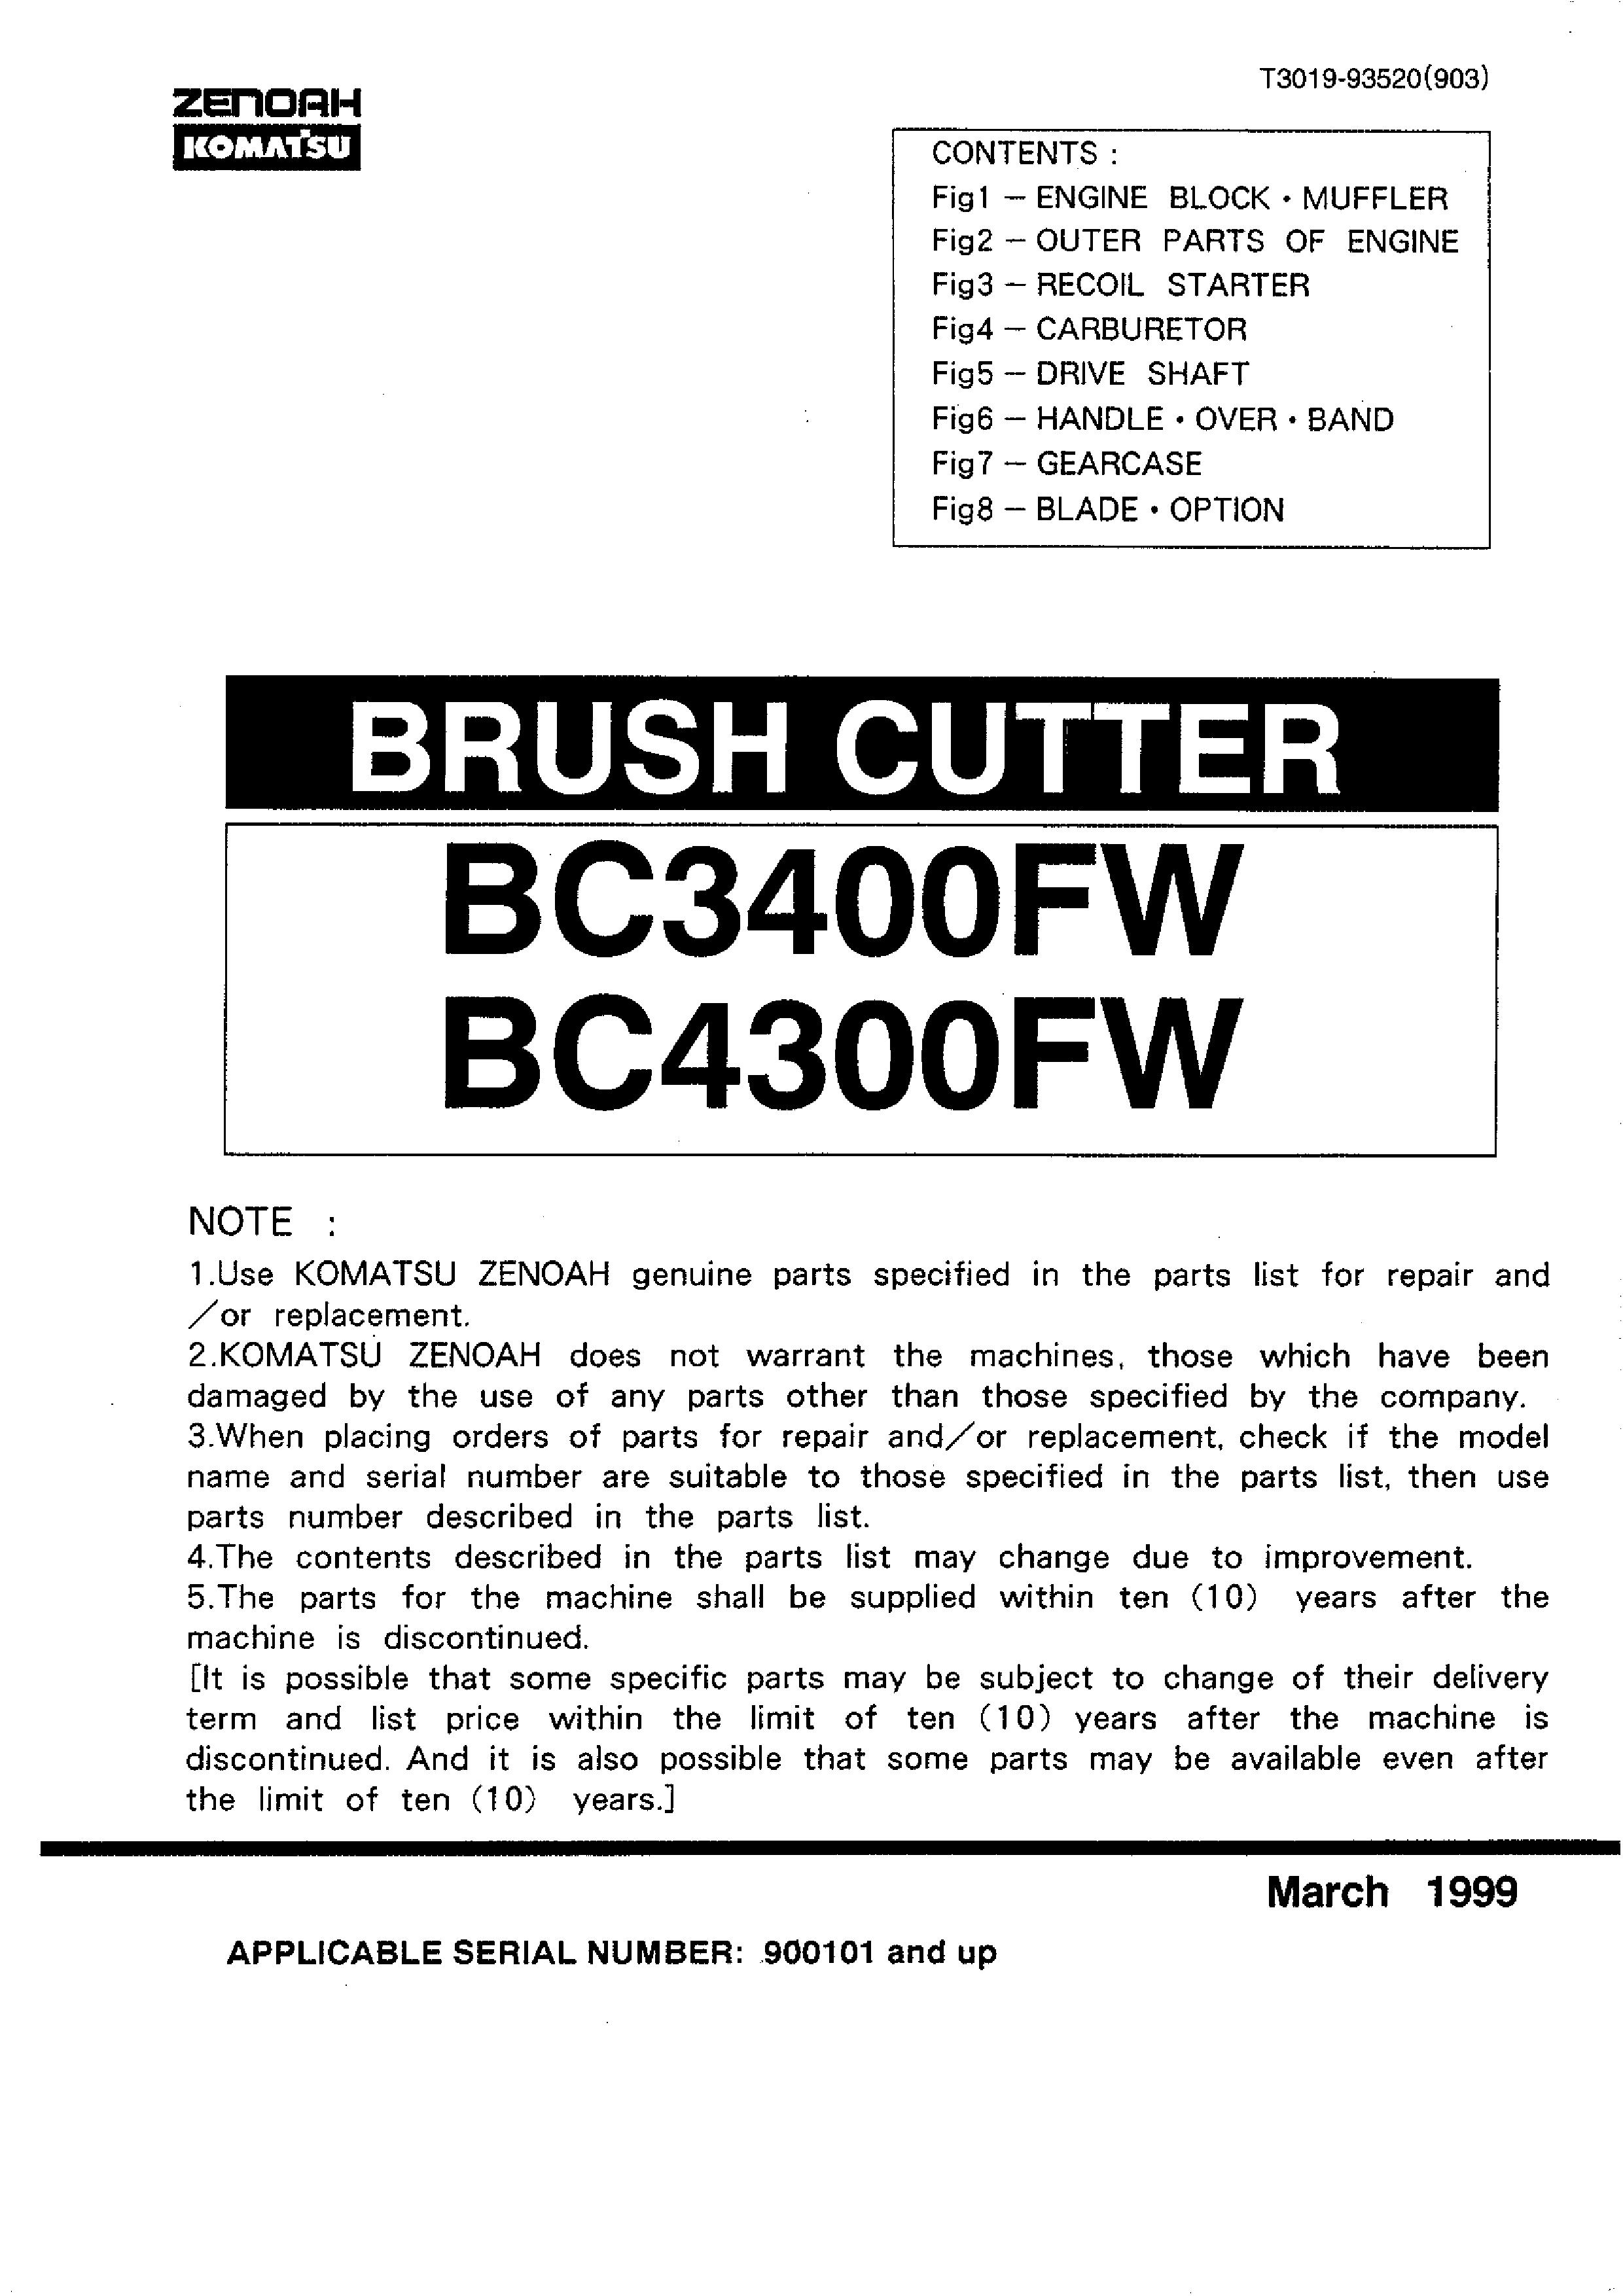 Zenoah BC3400FW Brush Cutter User Manual